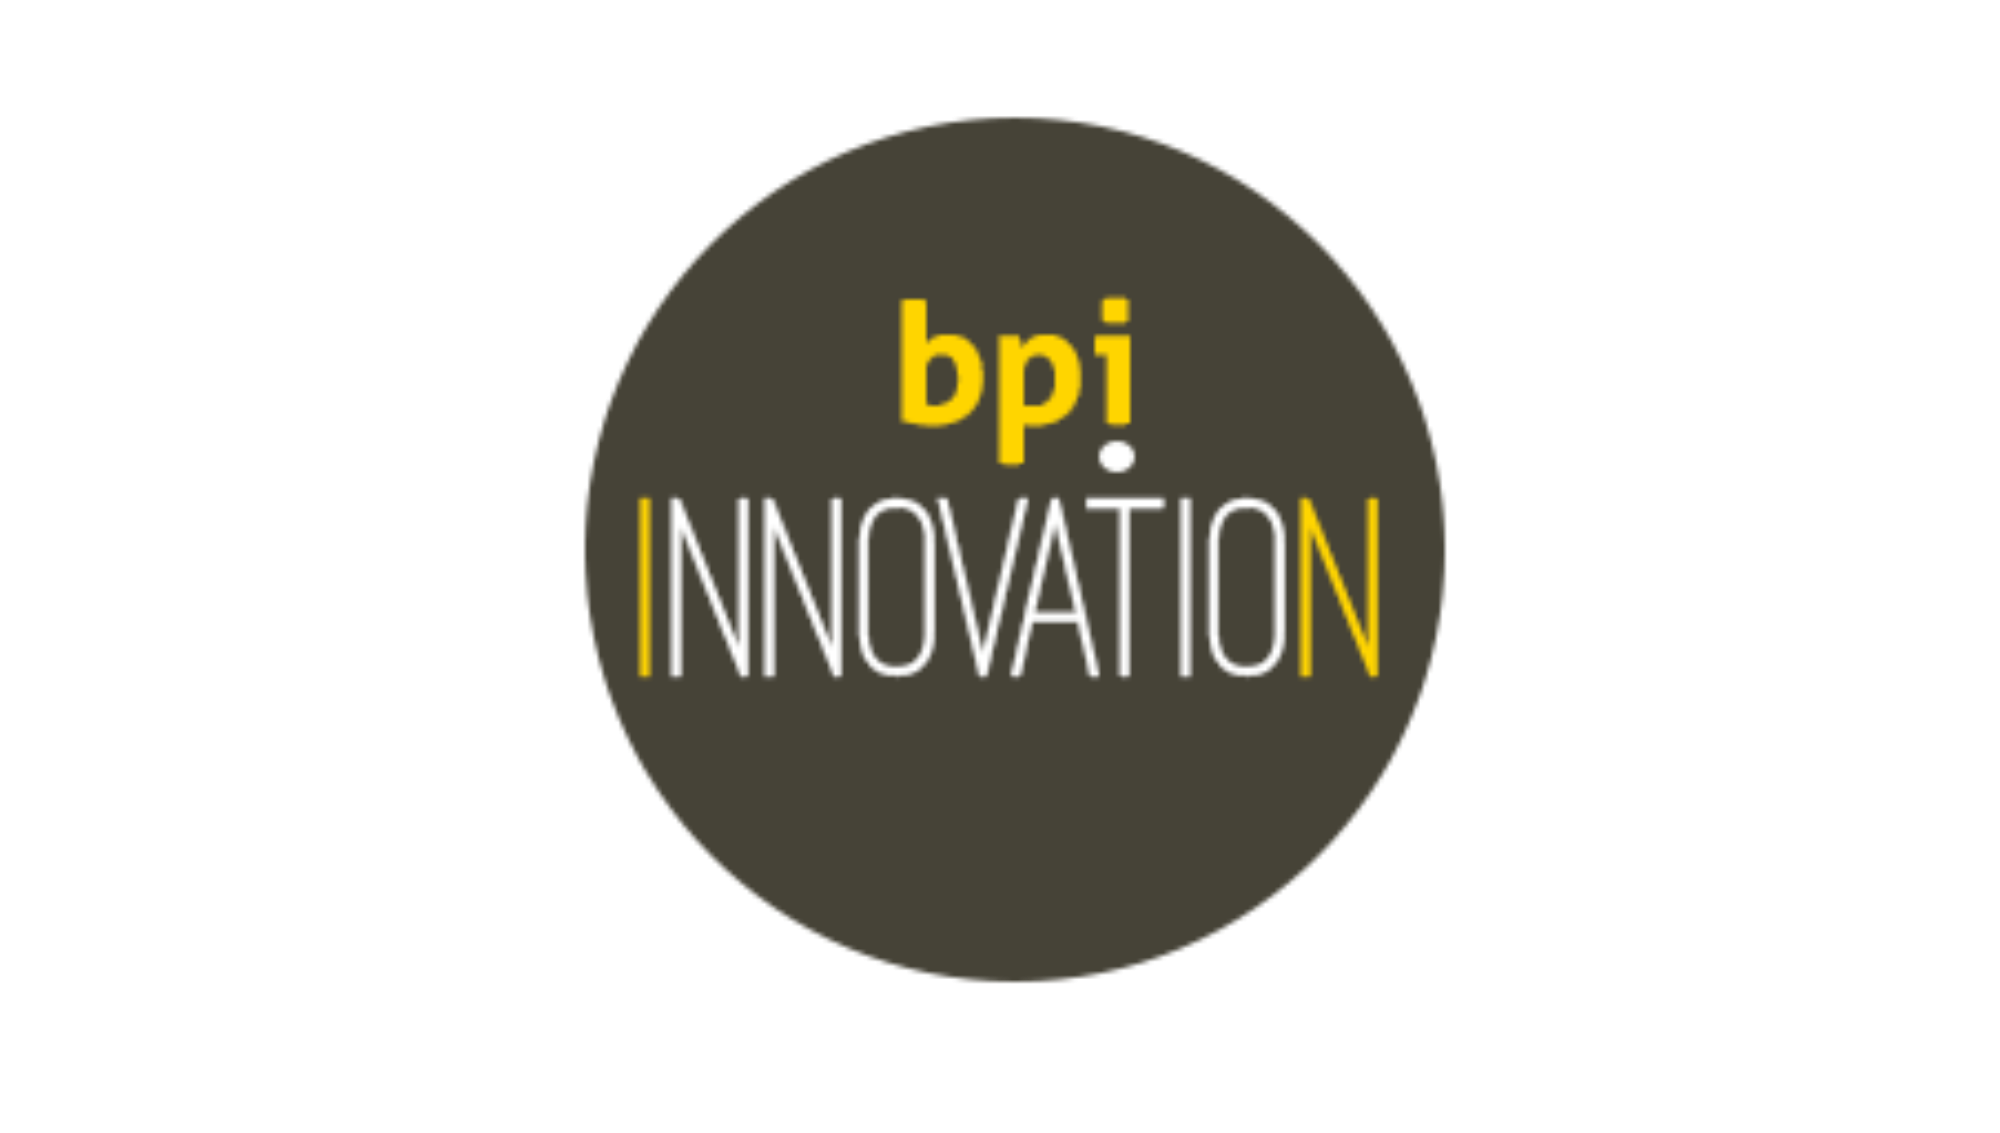 BPI innovation logo partenaires 